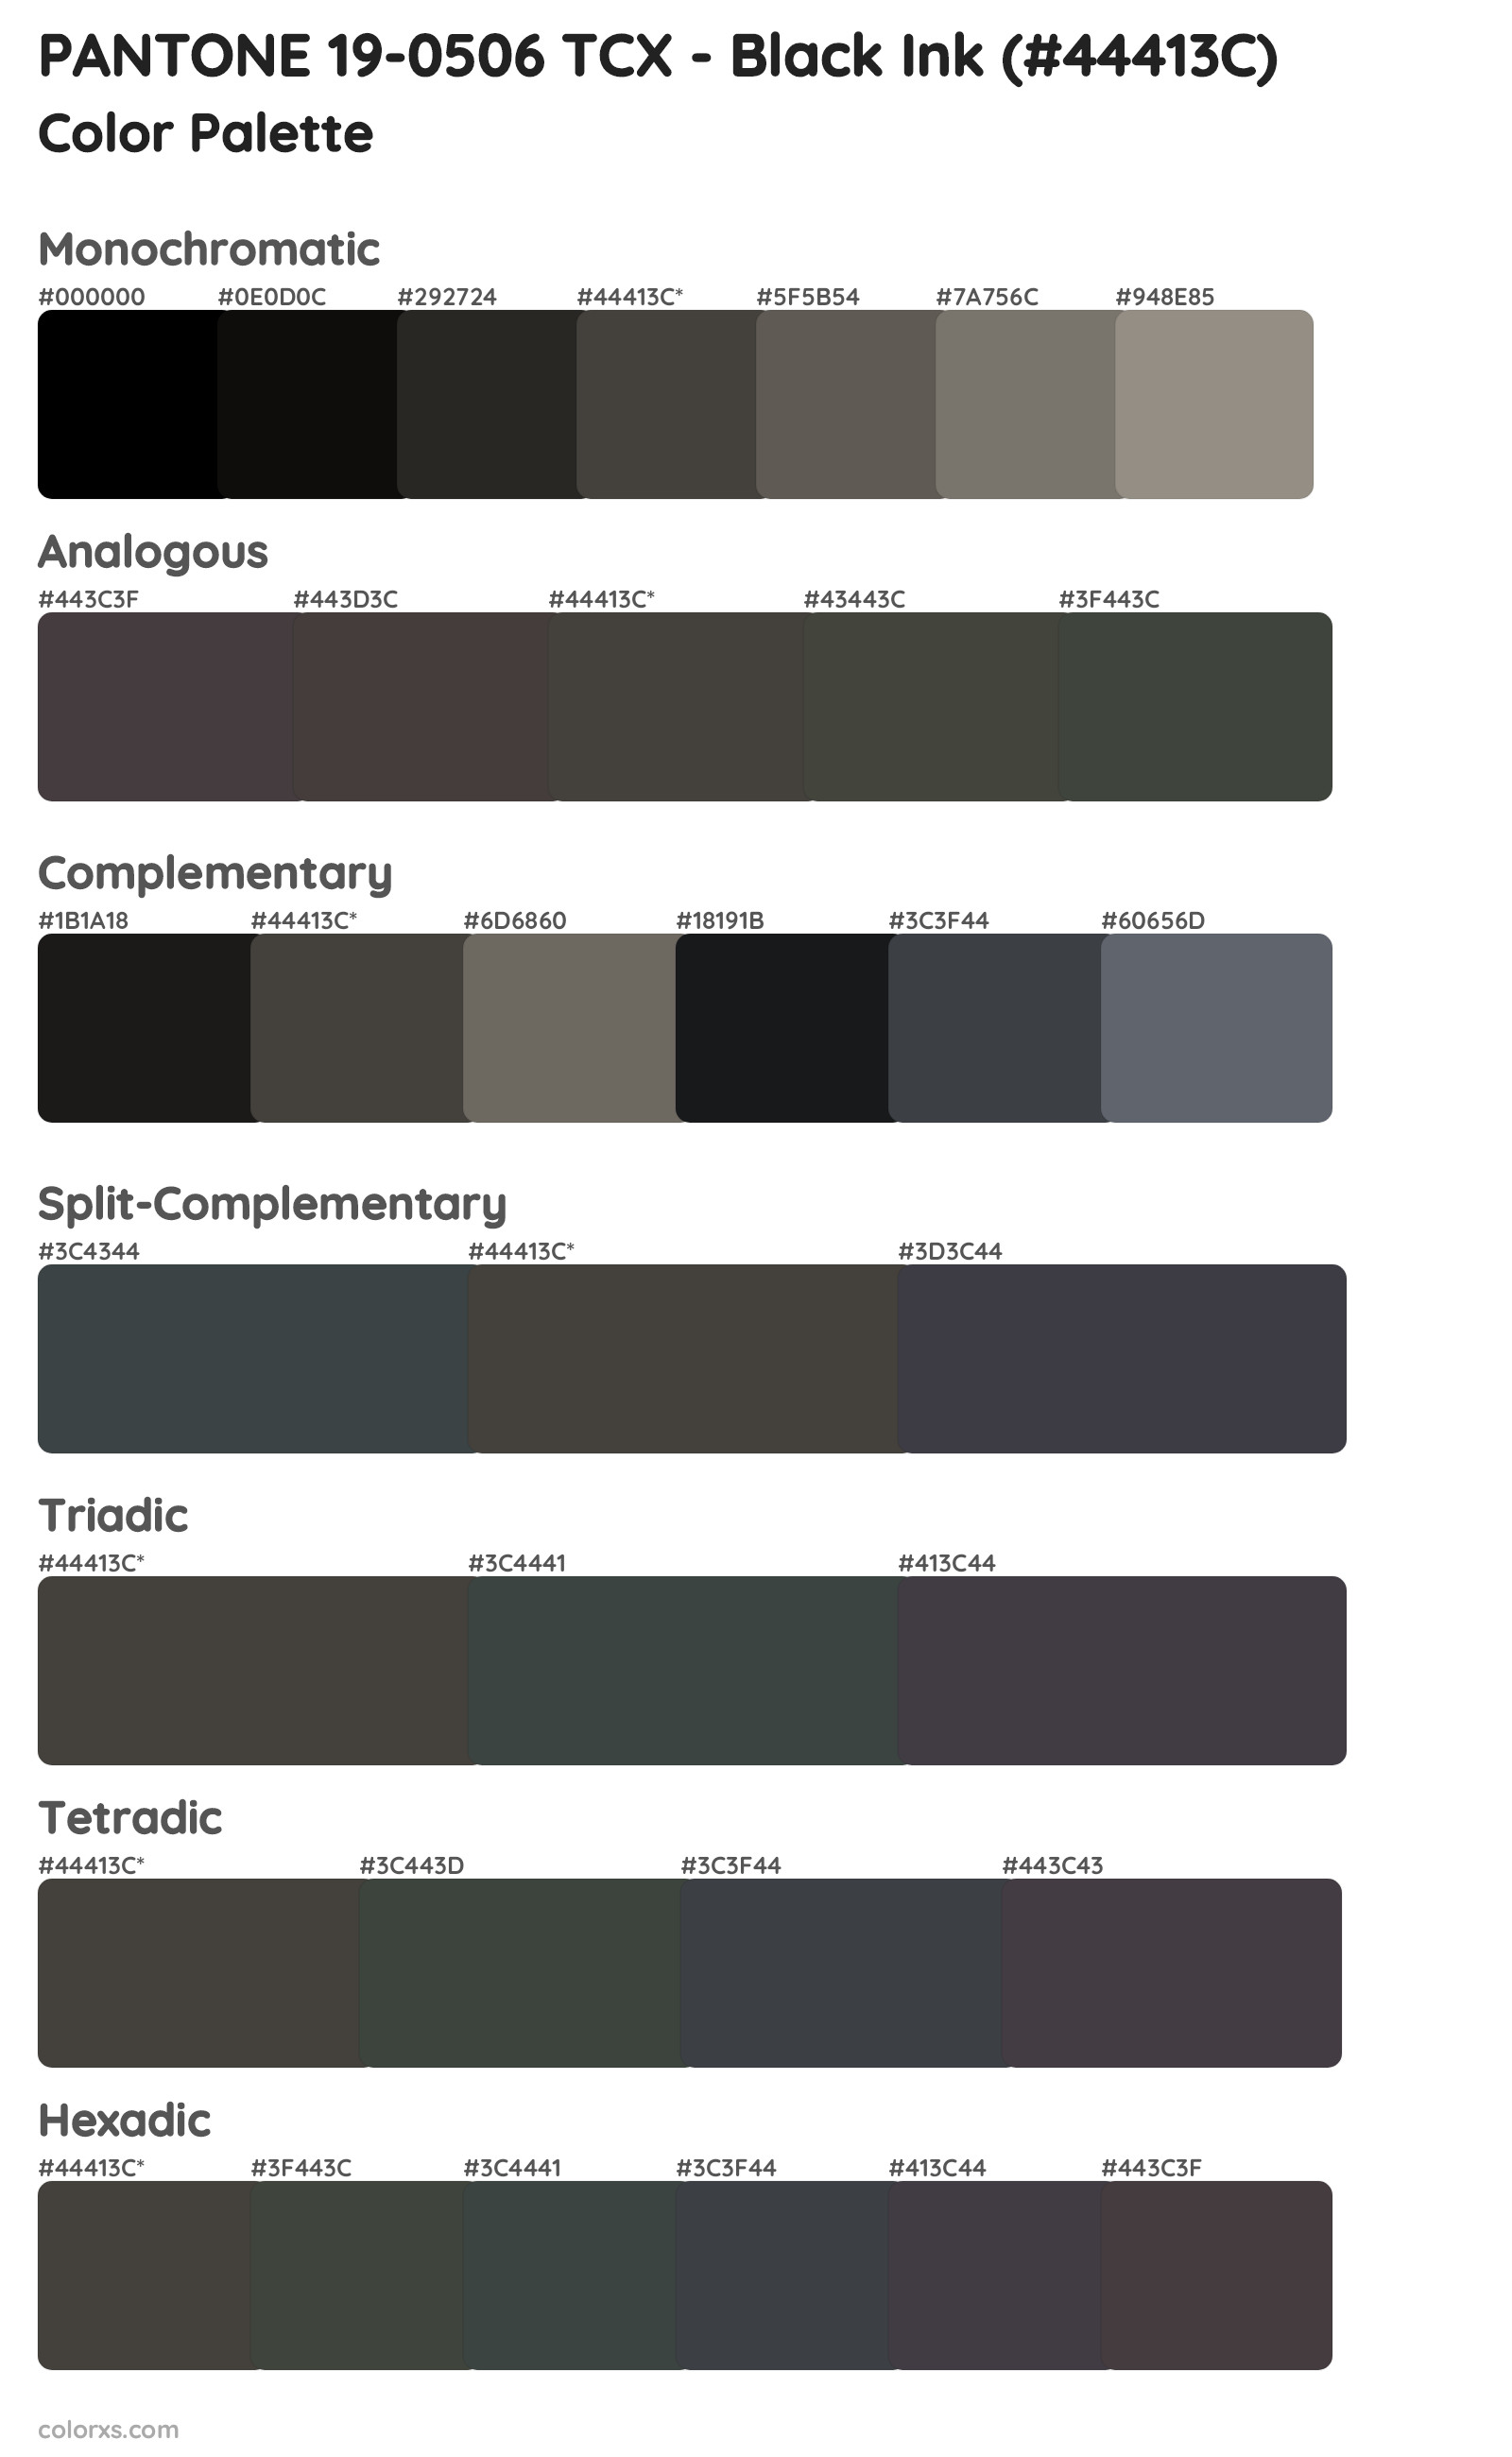 PANTONE 19-0506 TCX - Black Ink Color Scheme Palettes